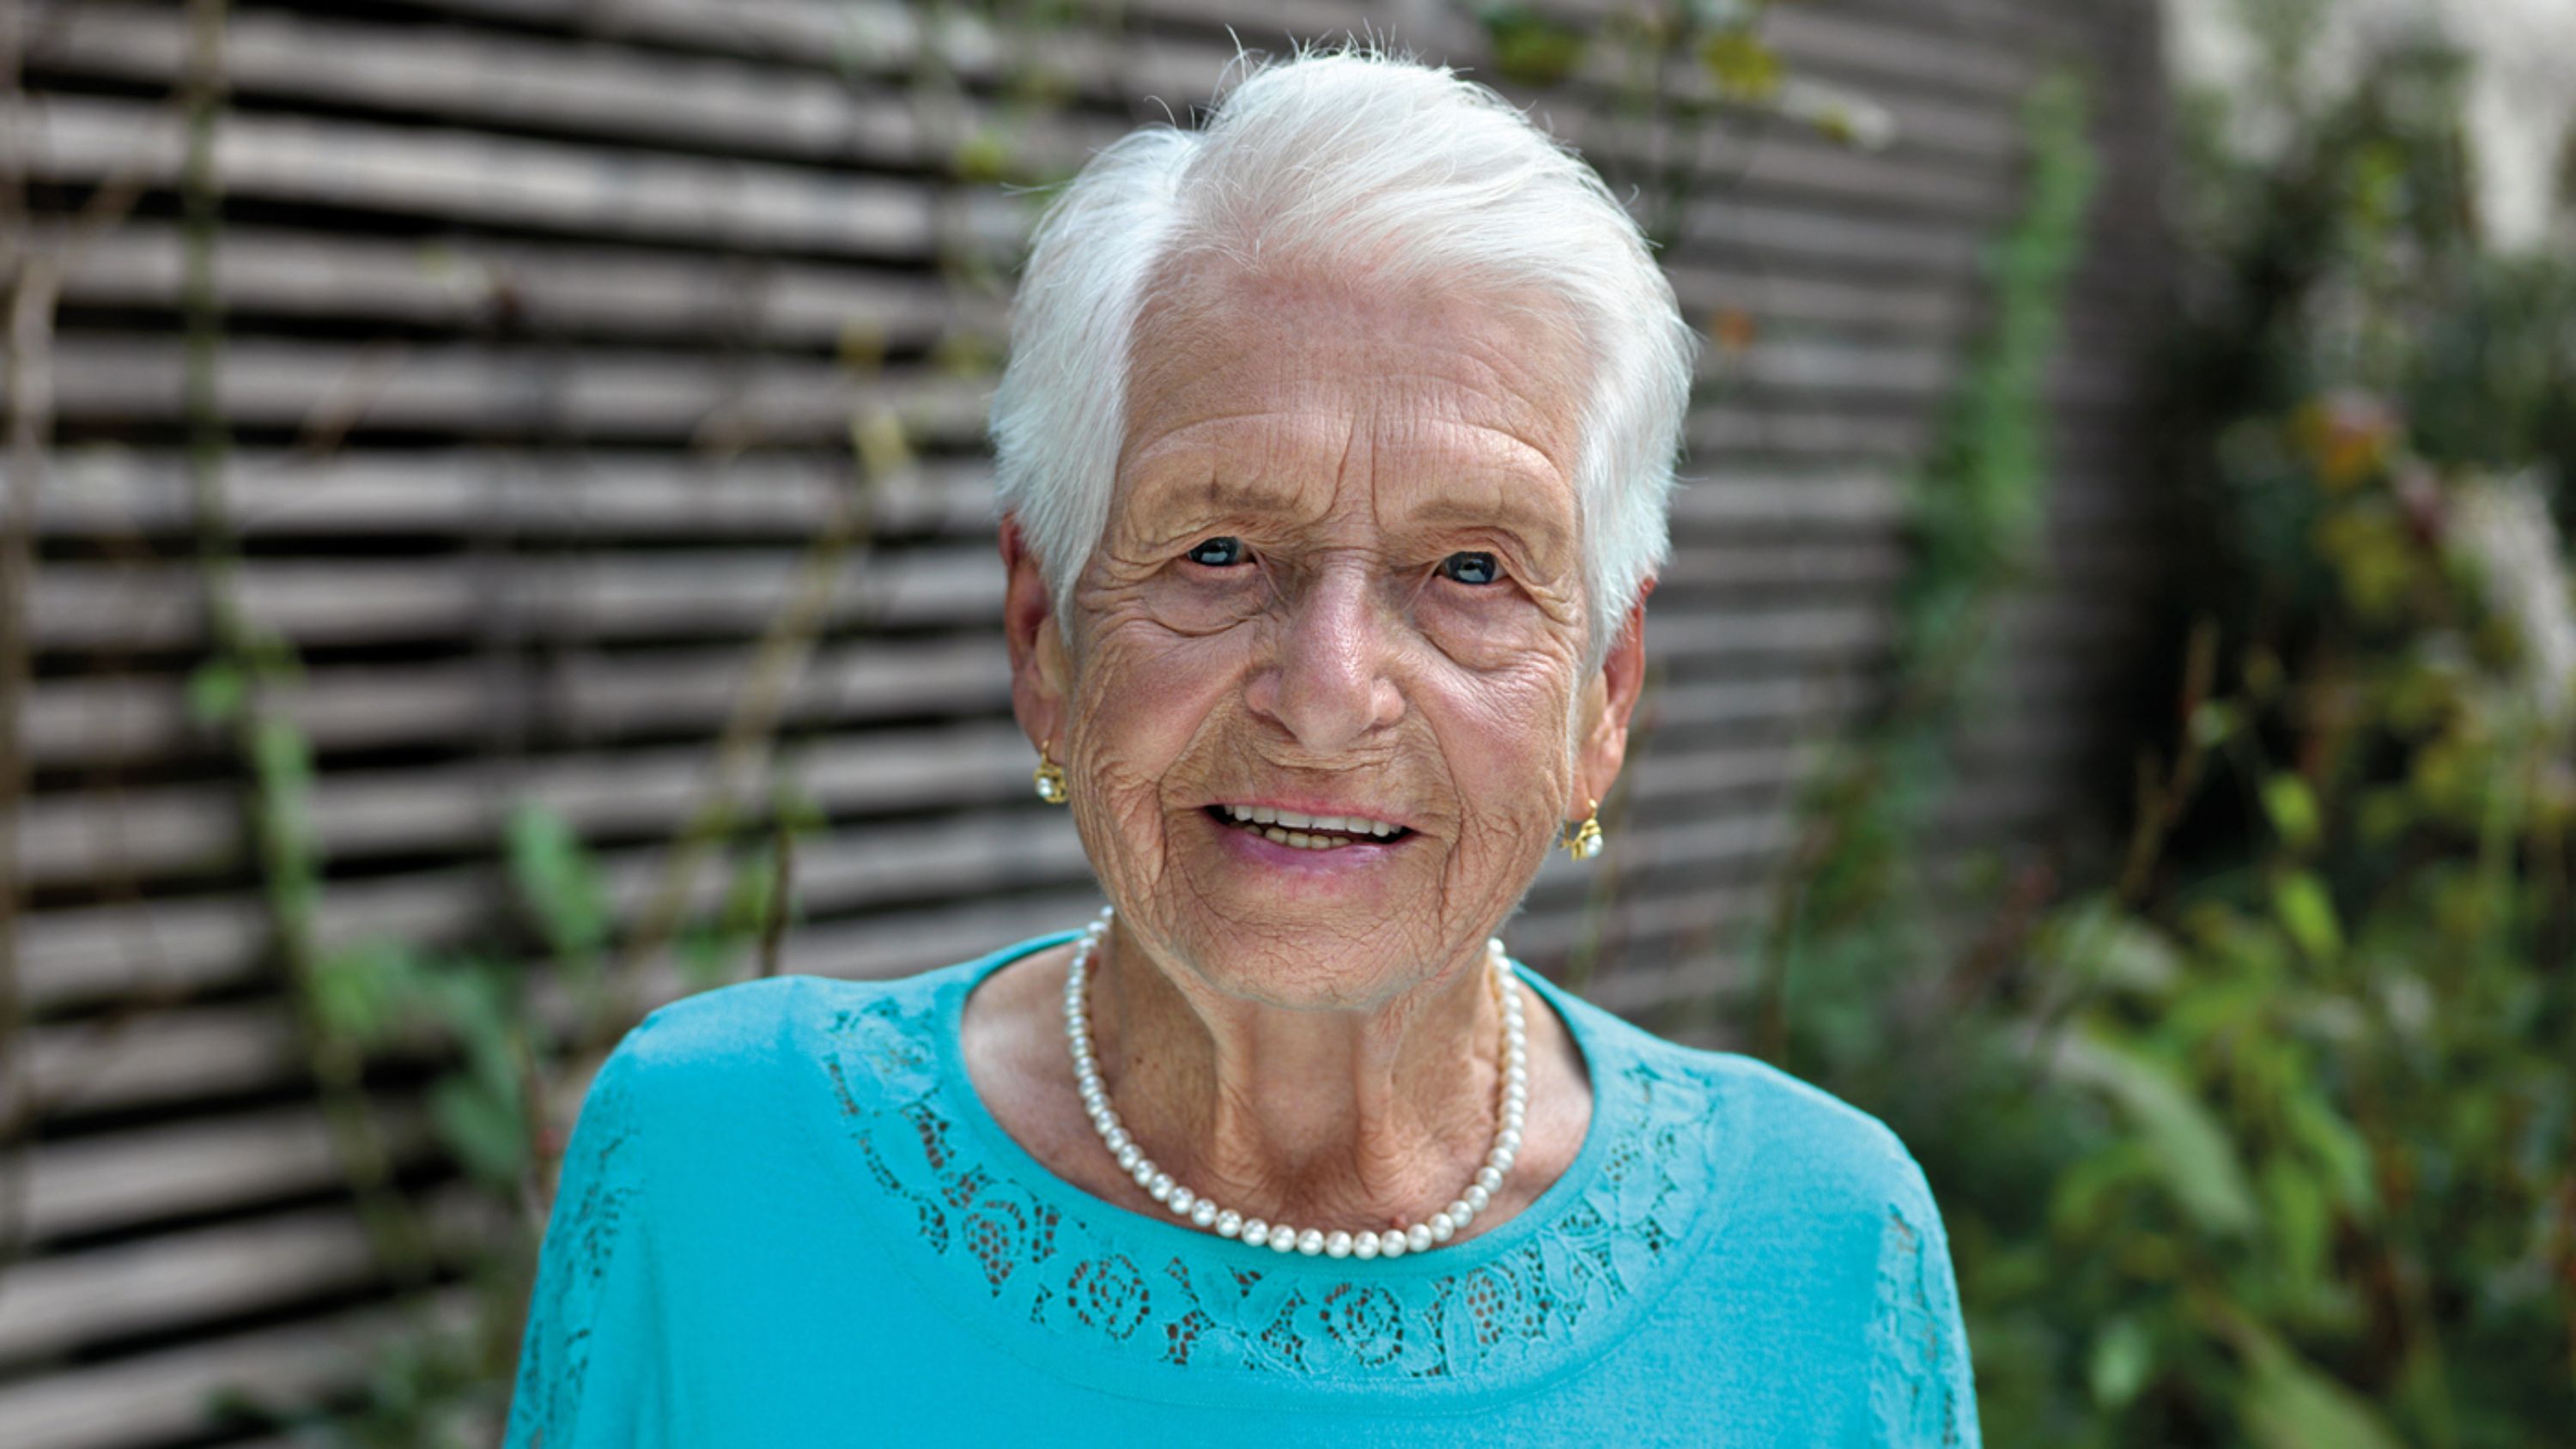 Une femme âgée portant un haut bleu et un collier de perles regarde la caméra en souriant.